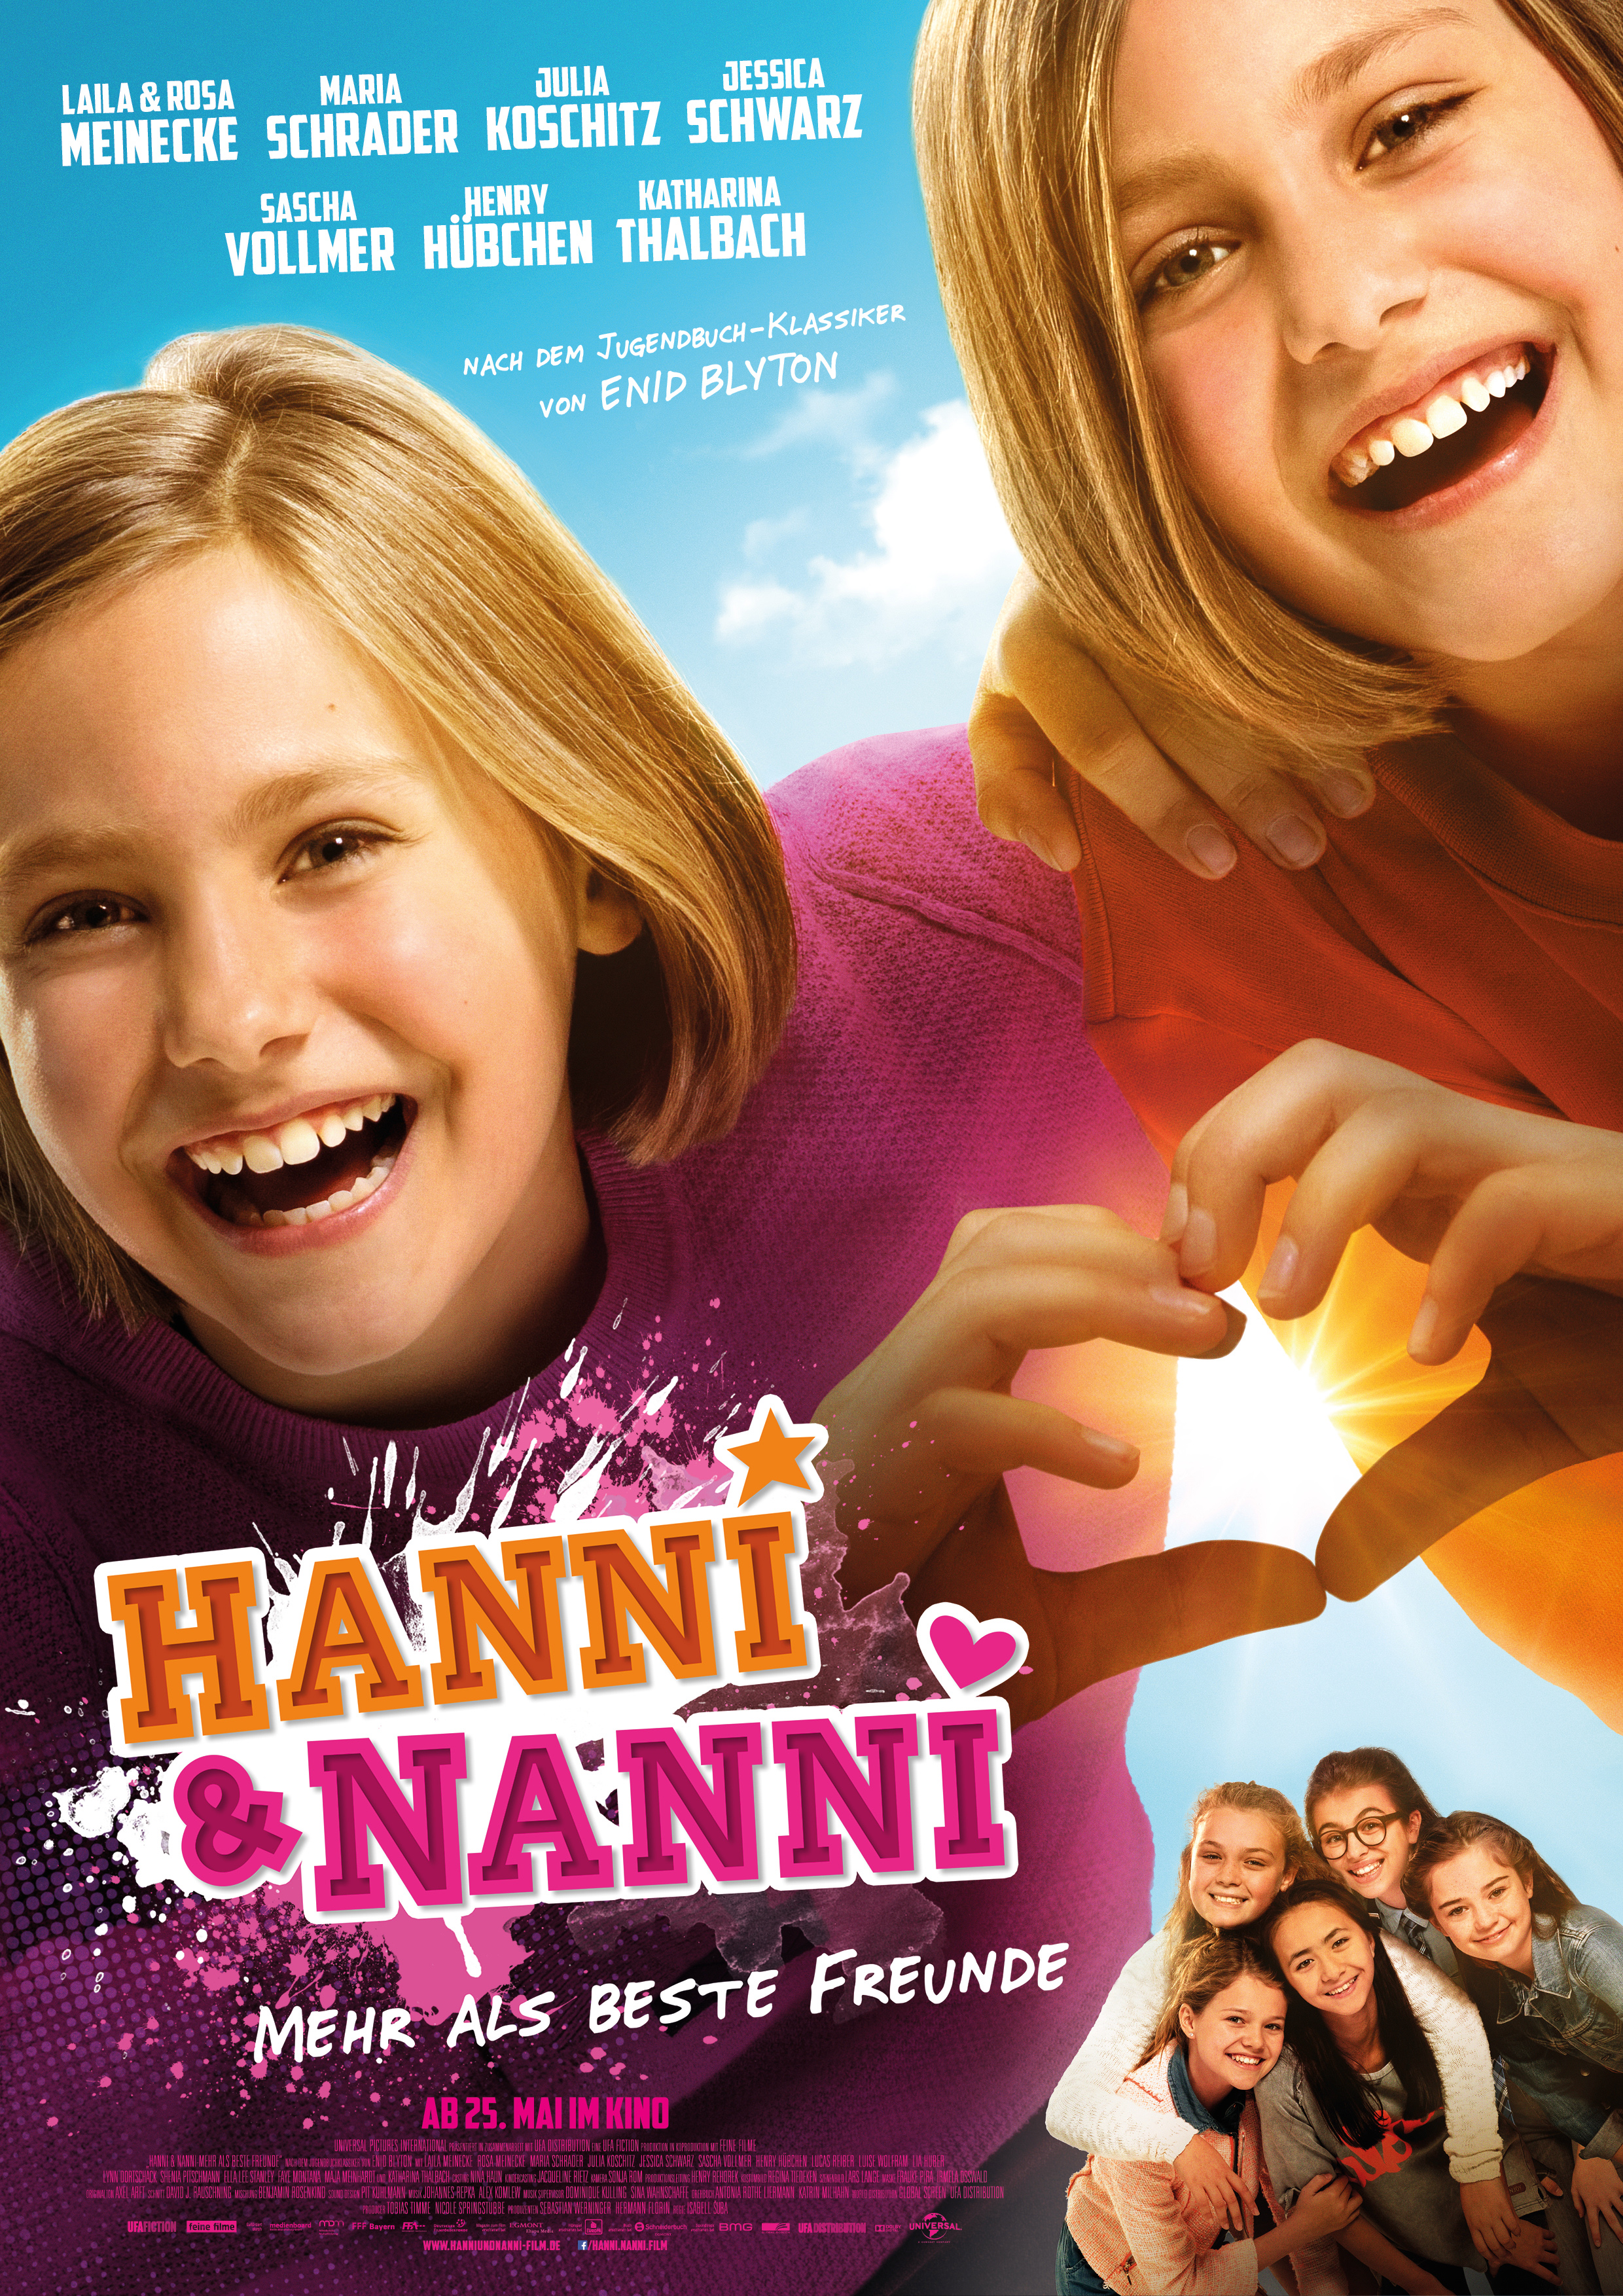 Hanni & Nanni: Mehr Als Beste Freunde Main Poster